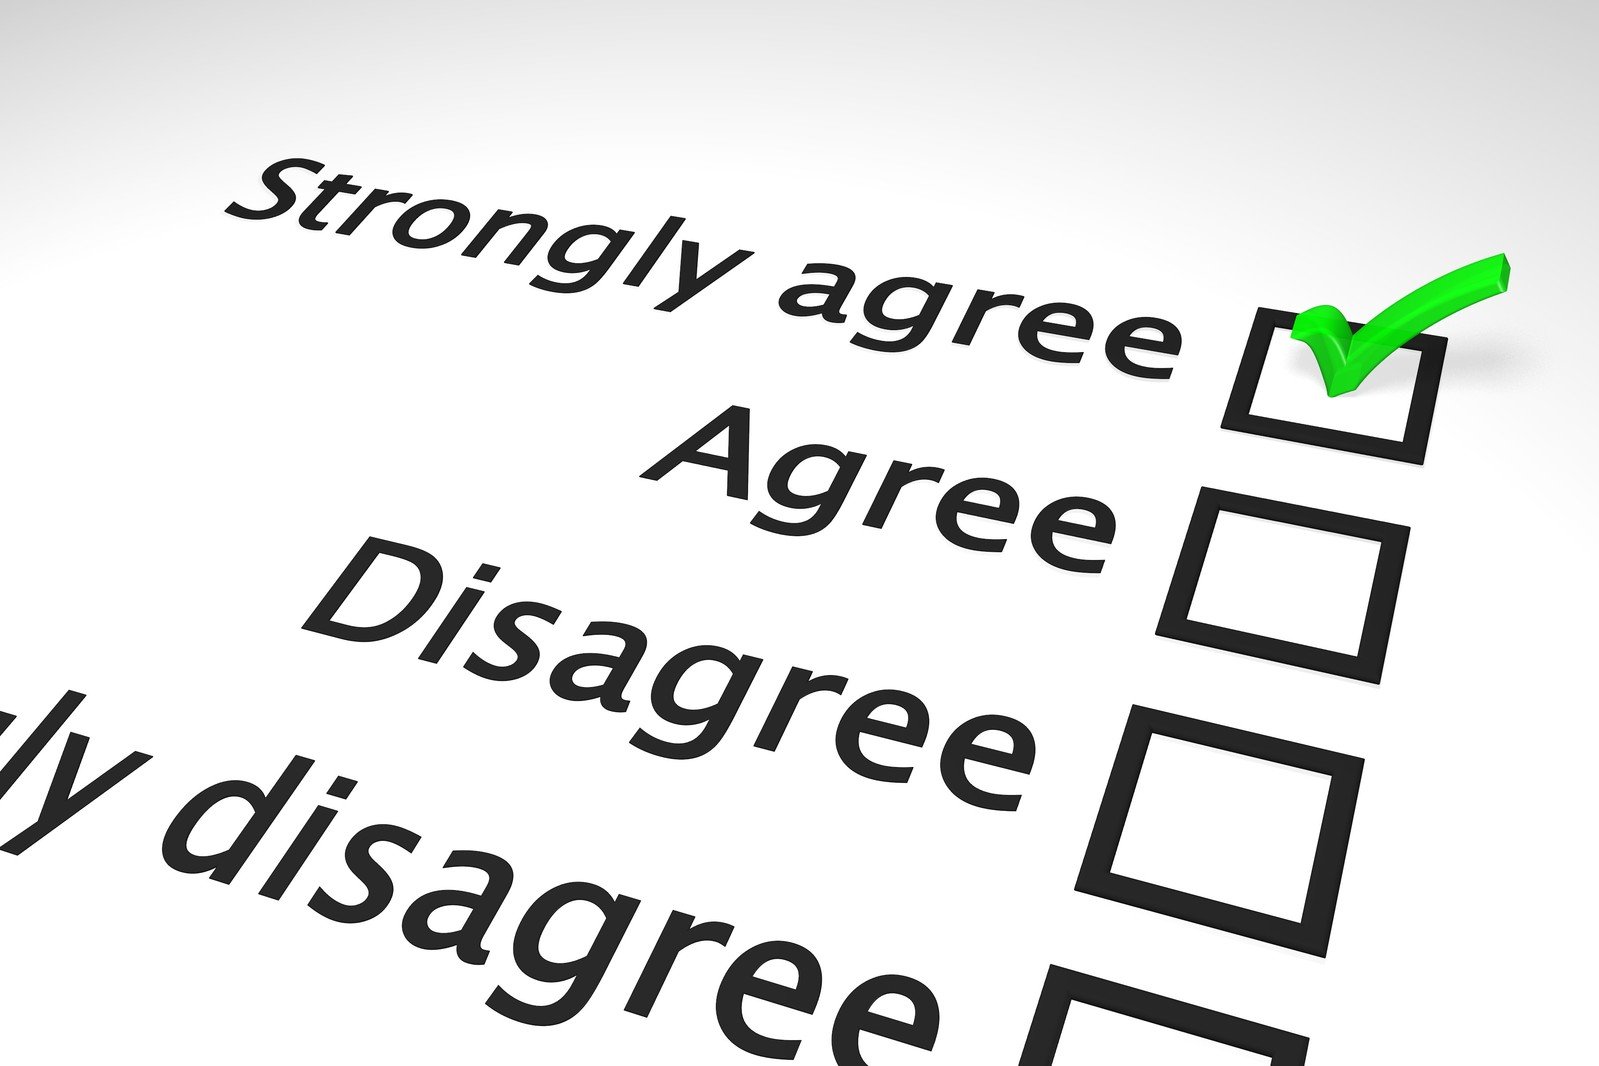 An agreement survey